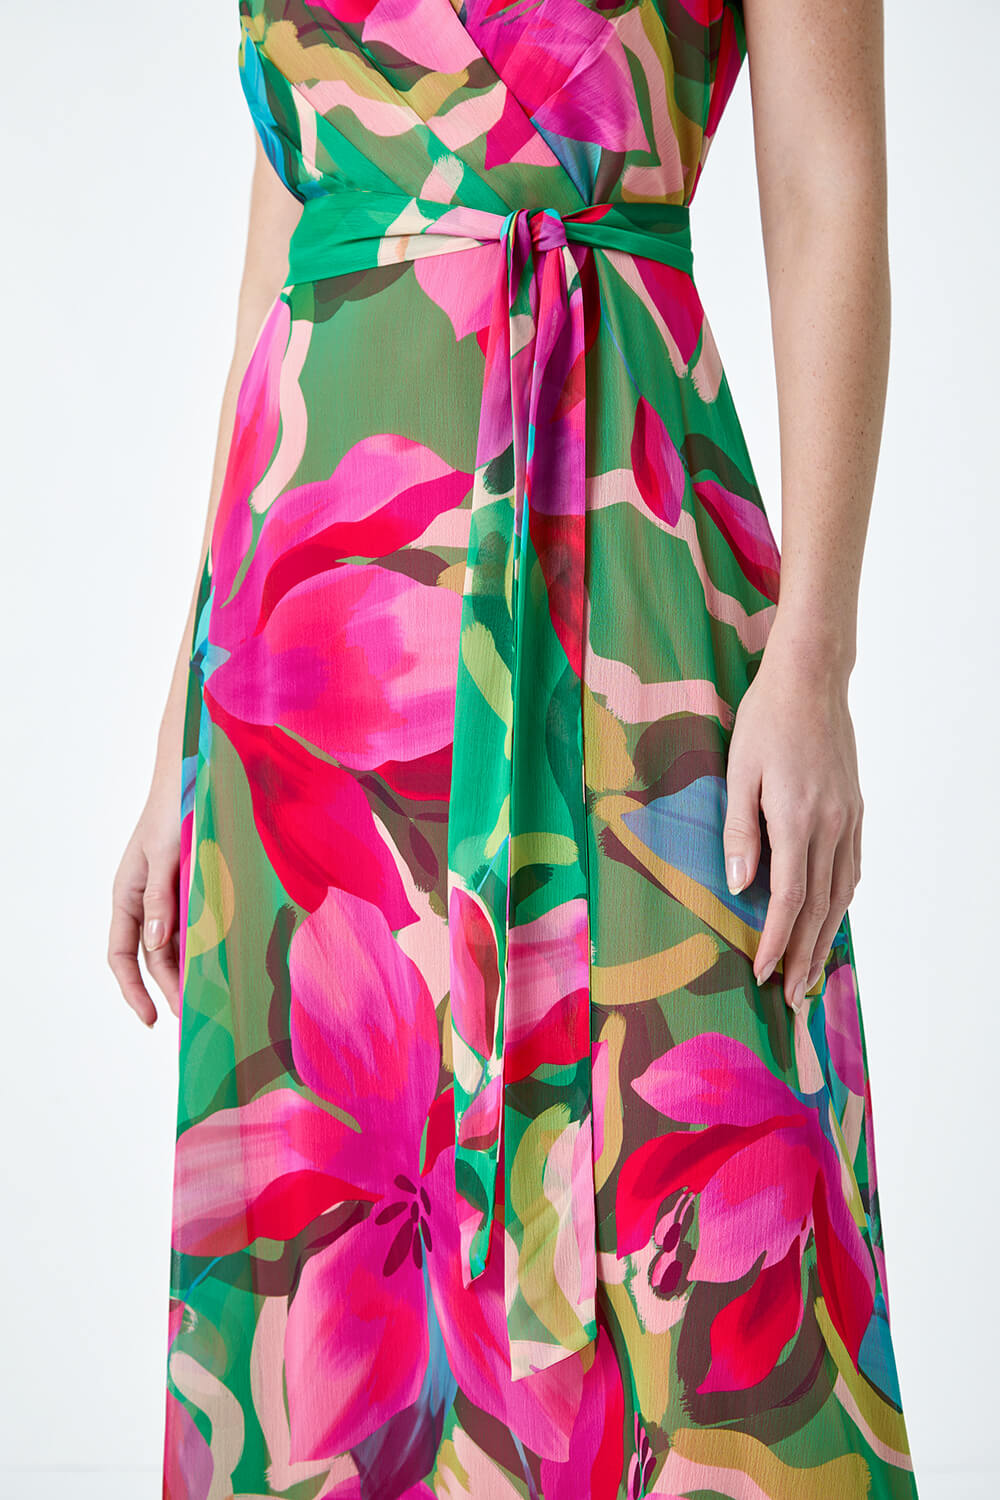 CERISE Floral Print Halterneck Maxi Dress, Image 5 of 5